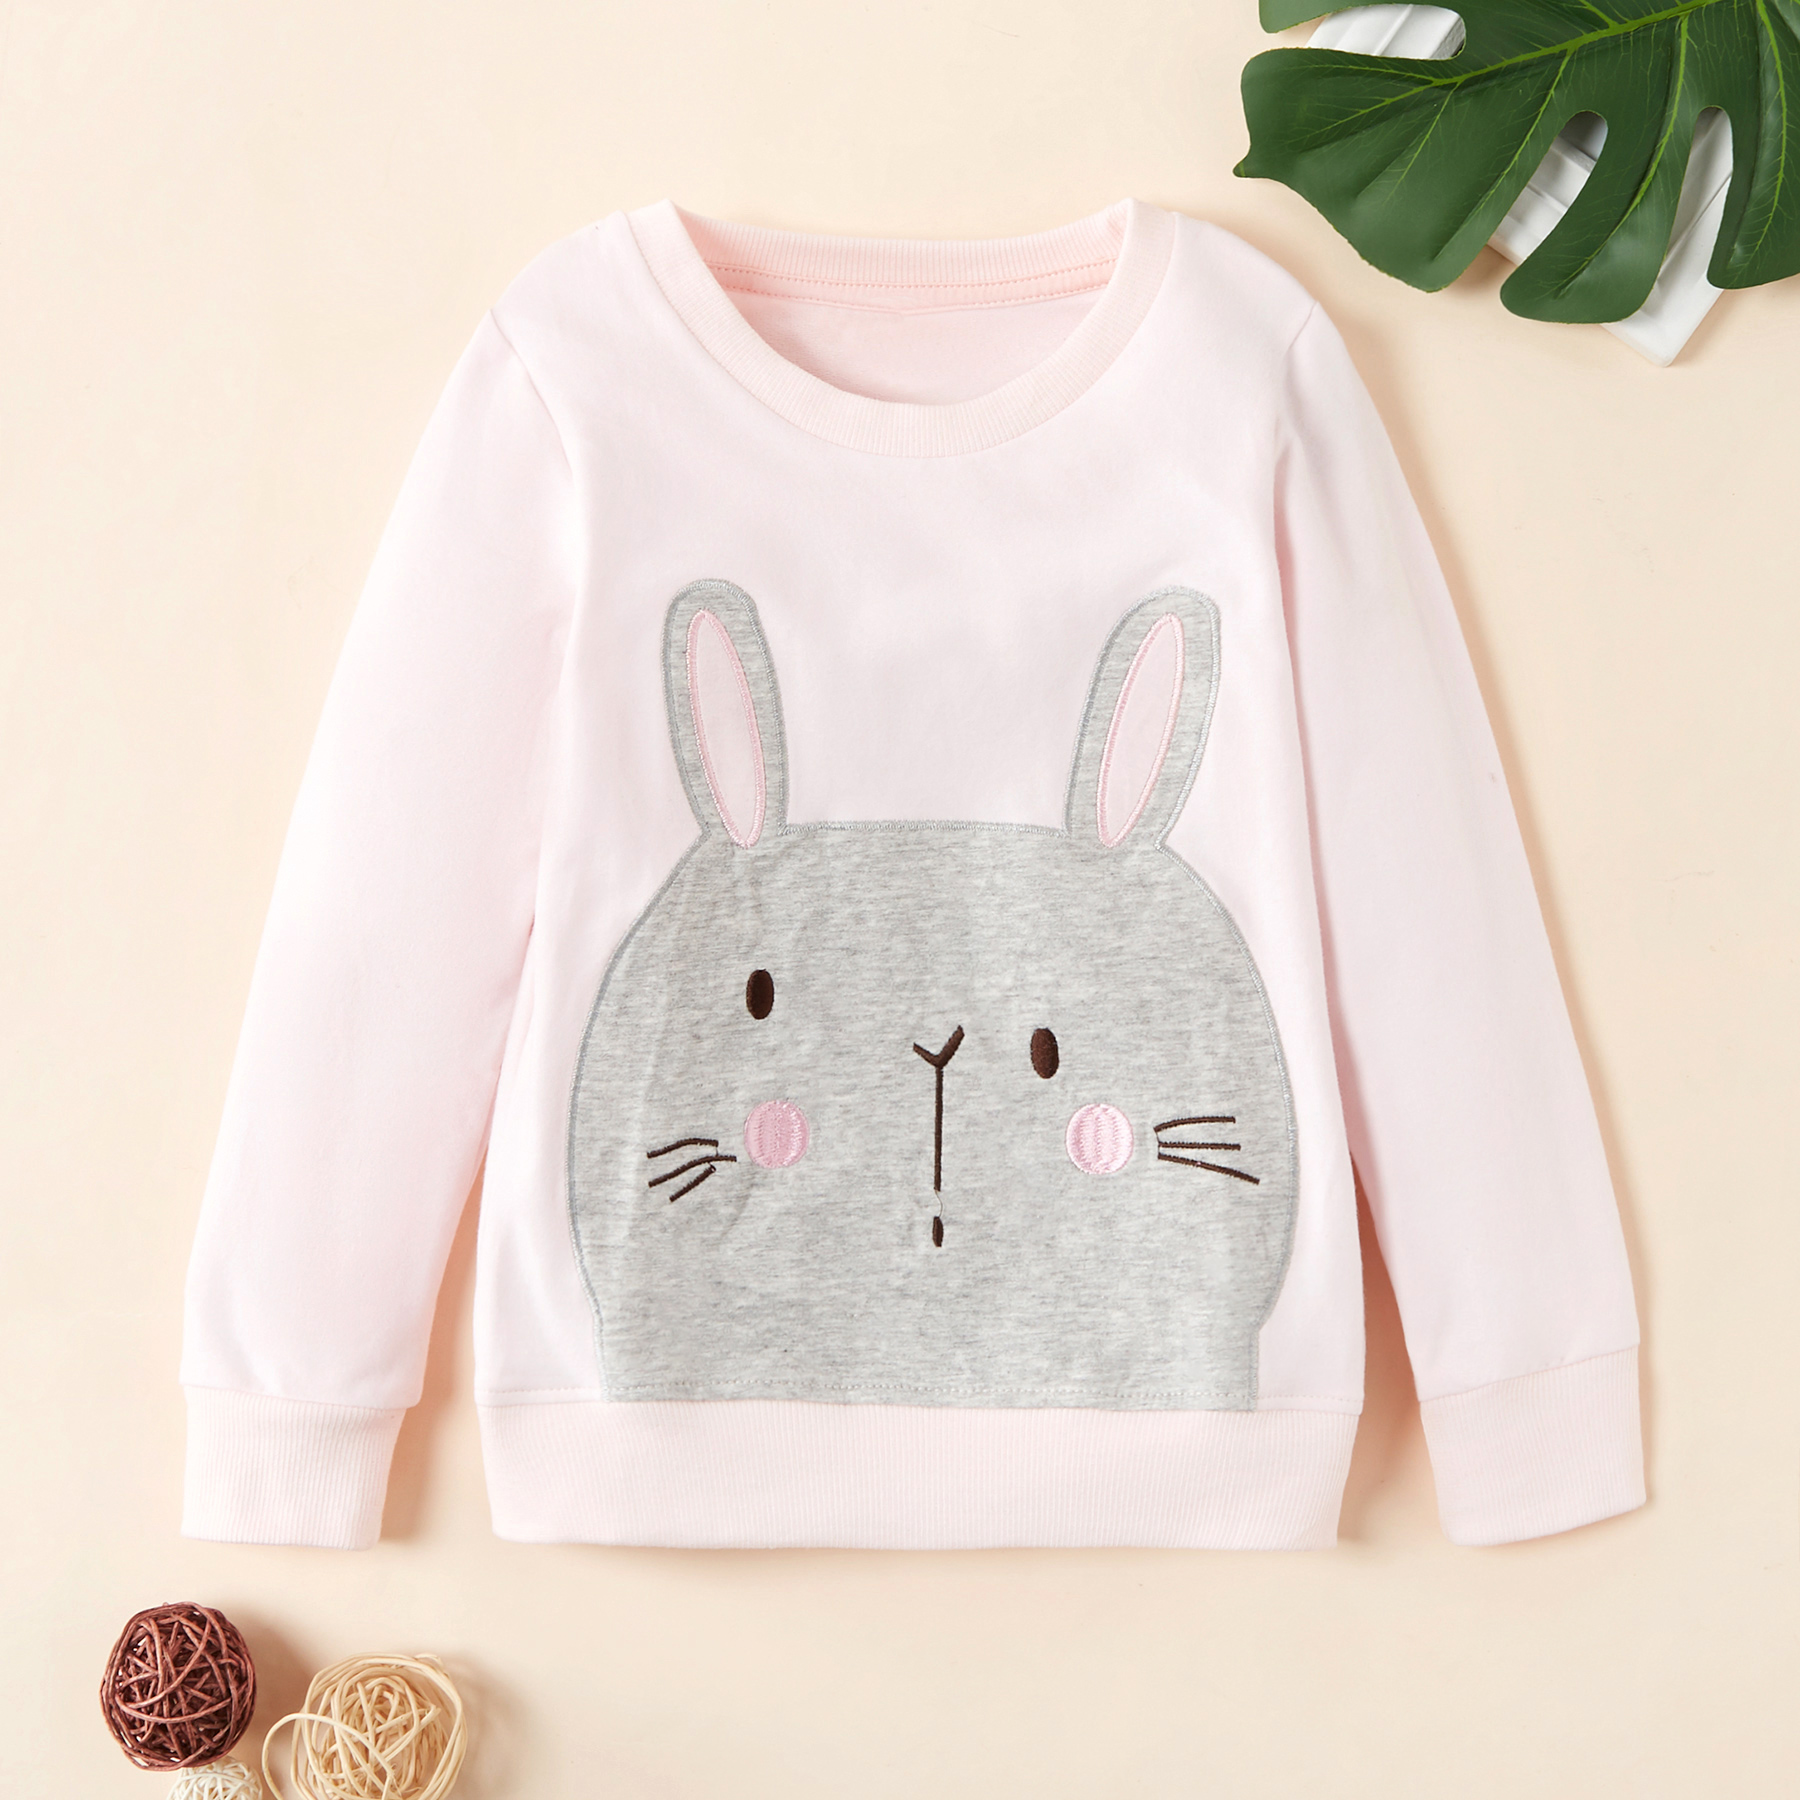 Adorable Animal Bunny Decor Sweatershirt for Girl